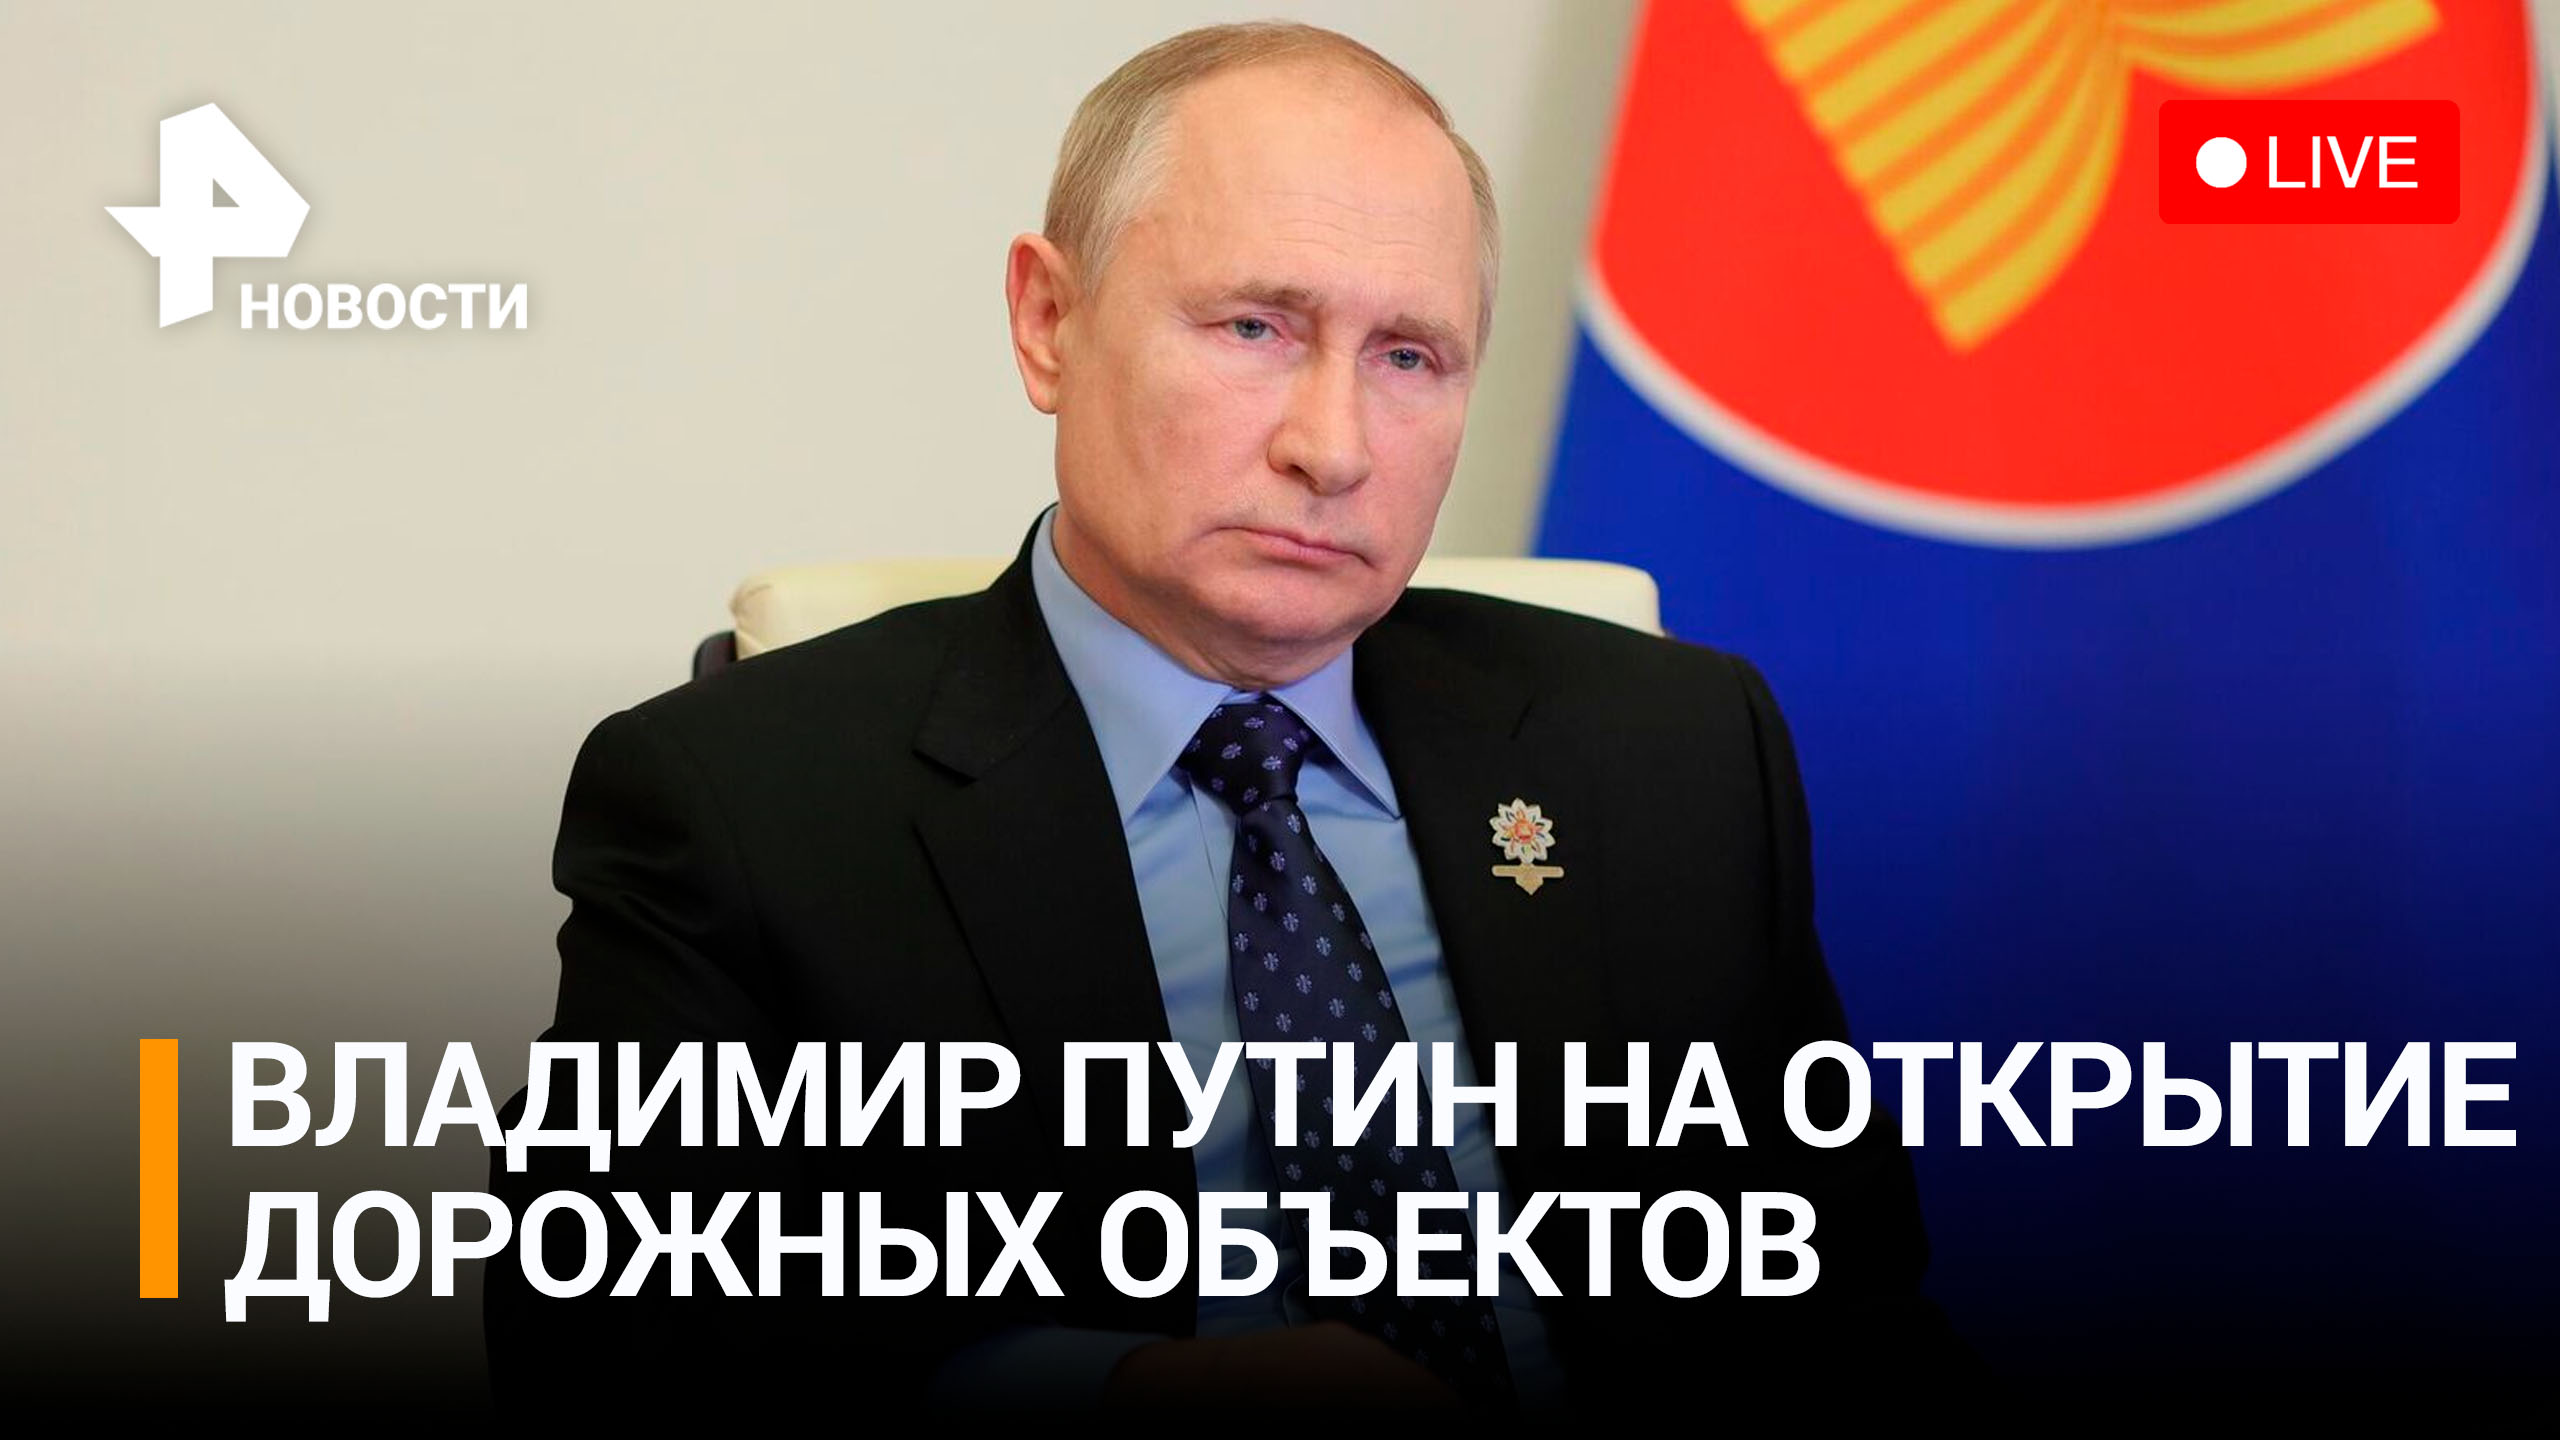 Владимир Путин на открытие объектов дорожного строительства в регионах РФ. Прямая трансляция